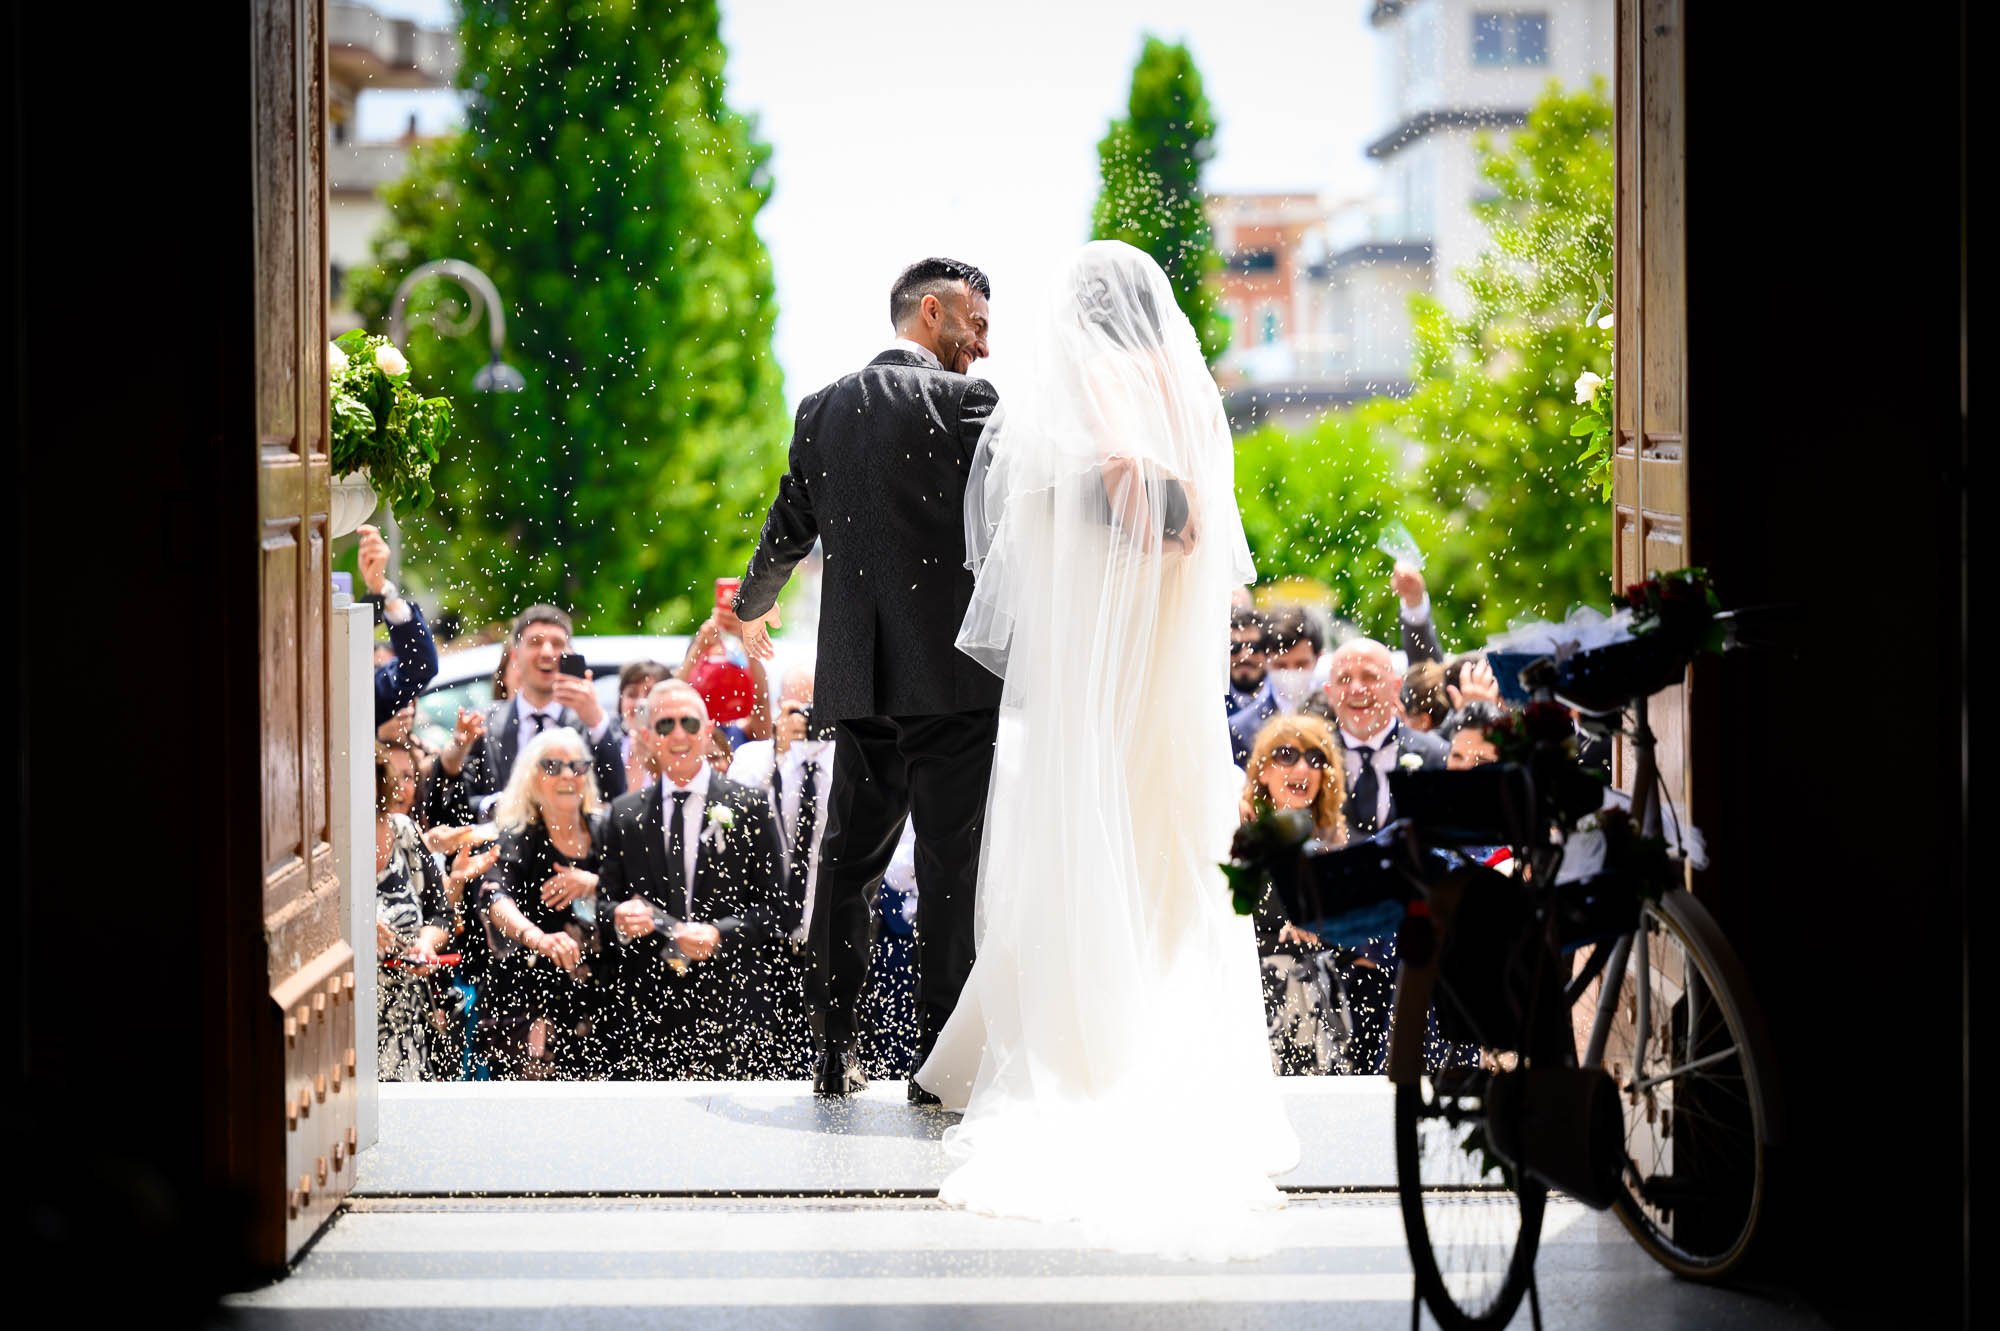 Patrizi Fotografi foto e video matrimonio roma